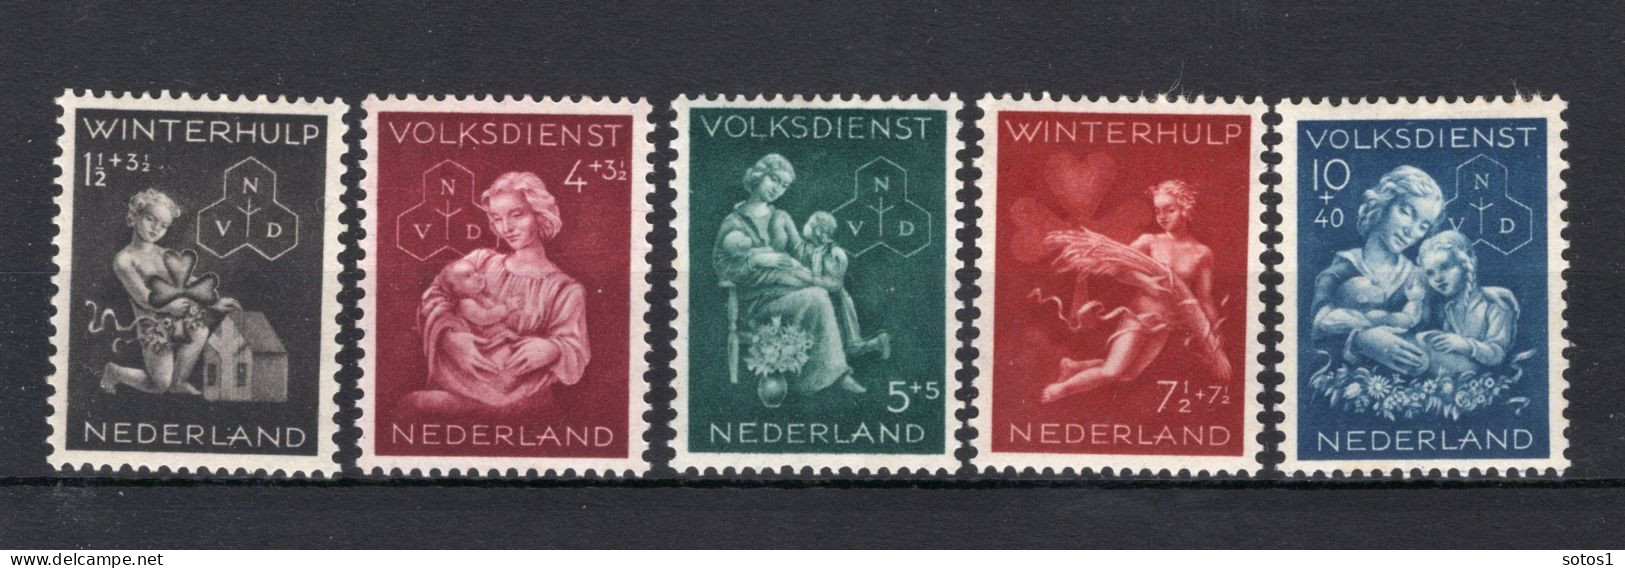 NEDERLAND 423/427 MH 1944 - Winterhulp-Volksdienstzegels -2 - Unused Stamps